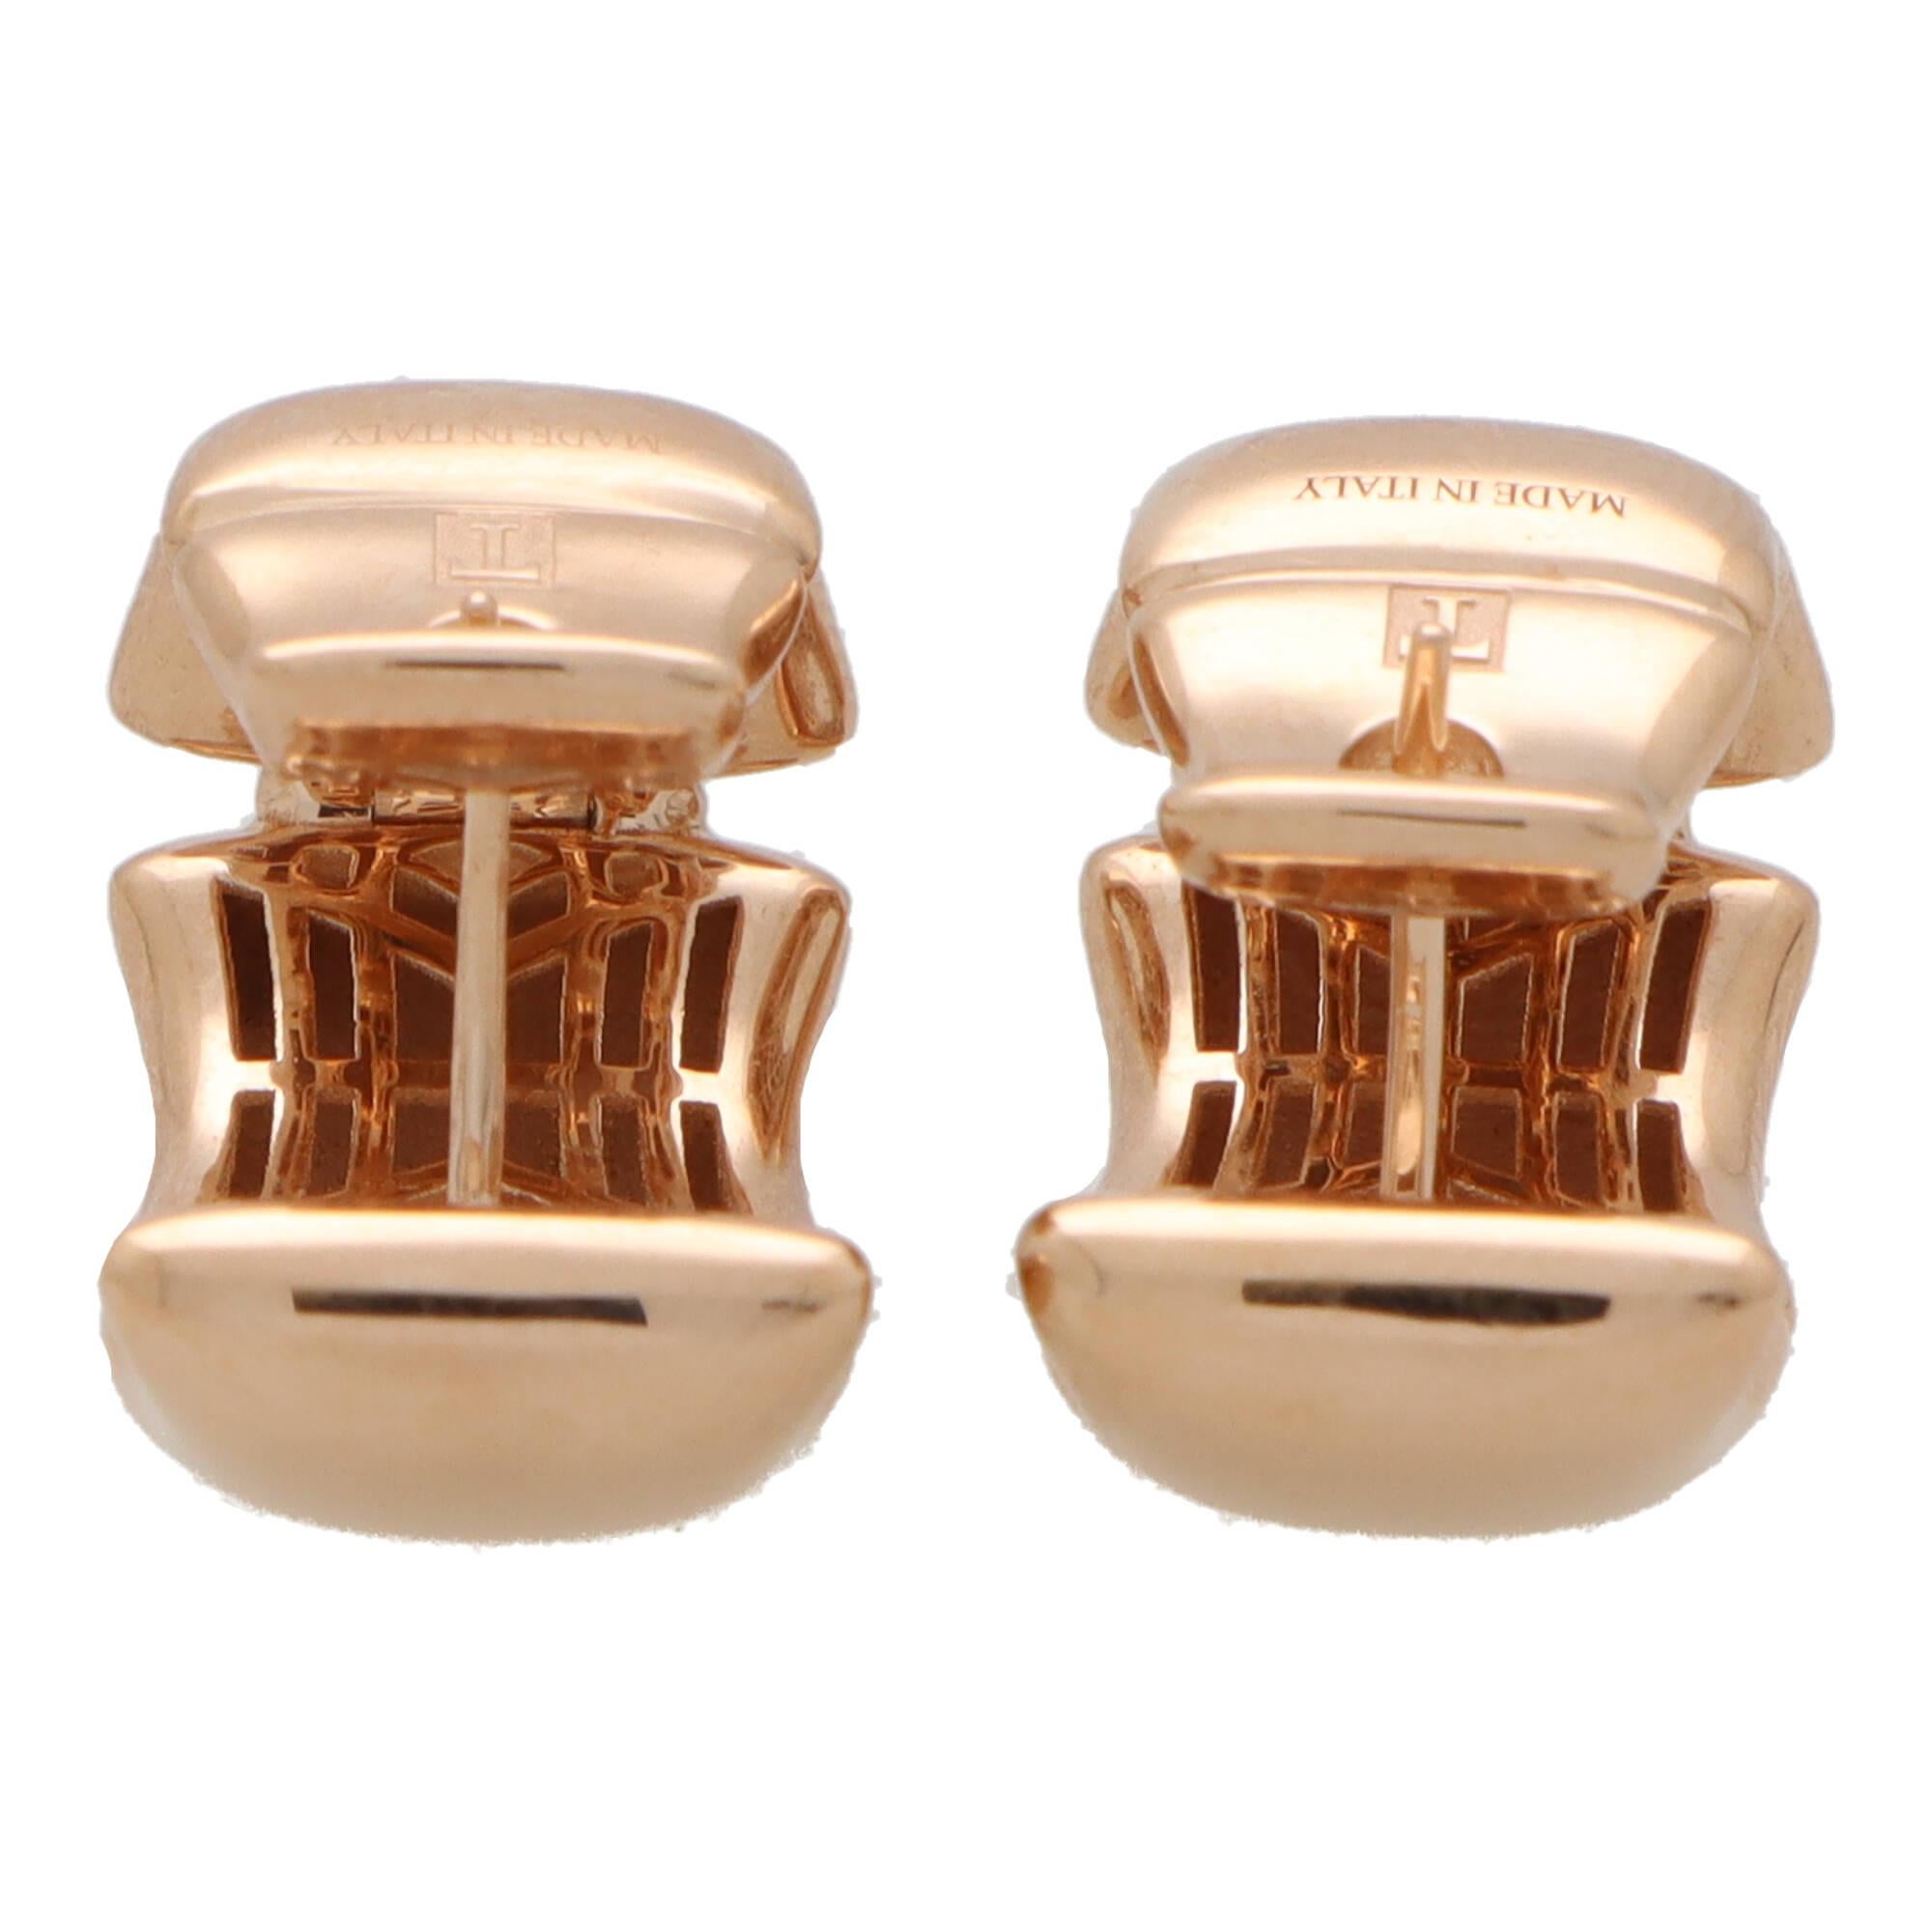 Ein interessantes Paar moderner Ohrringe aus 18 Karat Roségold.

Jeder Ohrring besteht aus mehreren roségoldenen Platten, die in einem klobigen Reifendesign geformt sind. Sie werden mit einem Pfosten und einem Klickverschluss befestigt.

Aufgrund